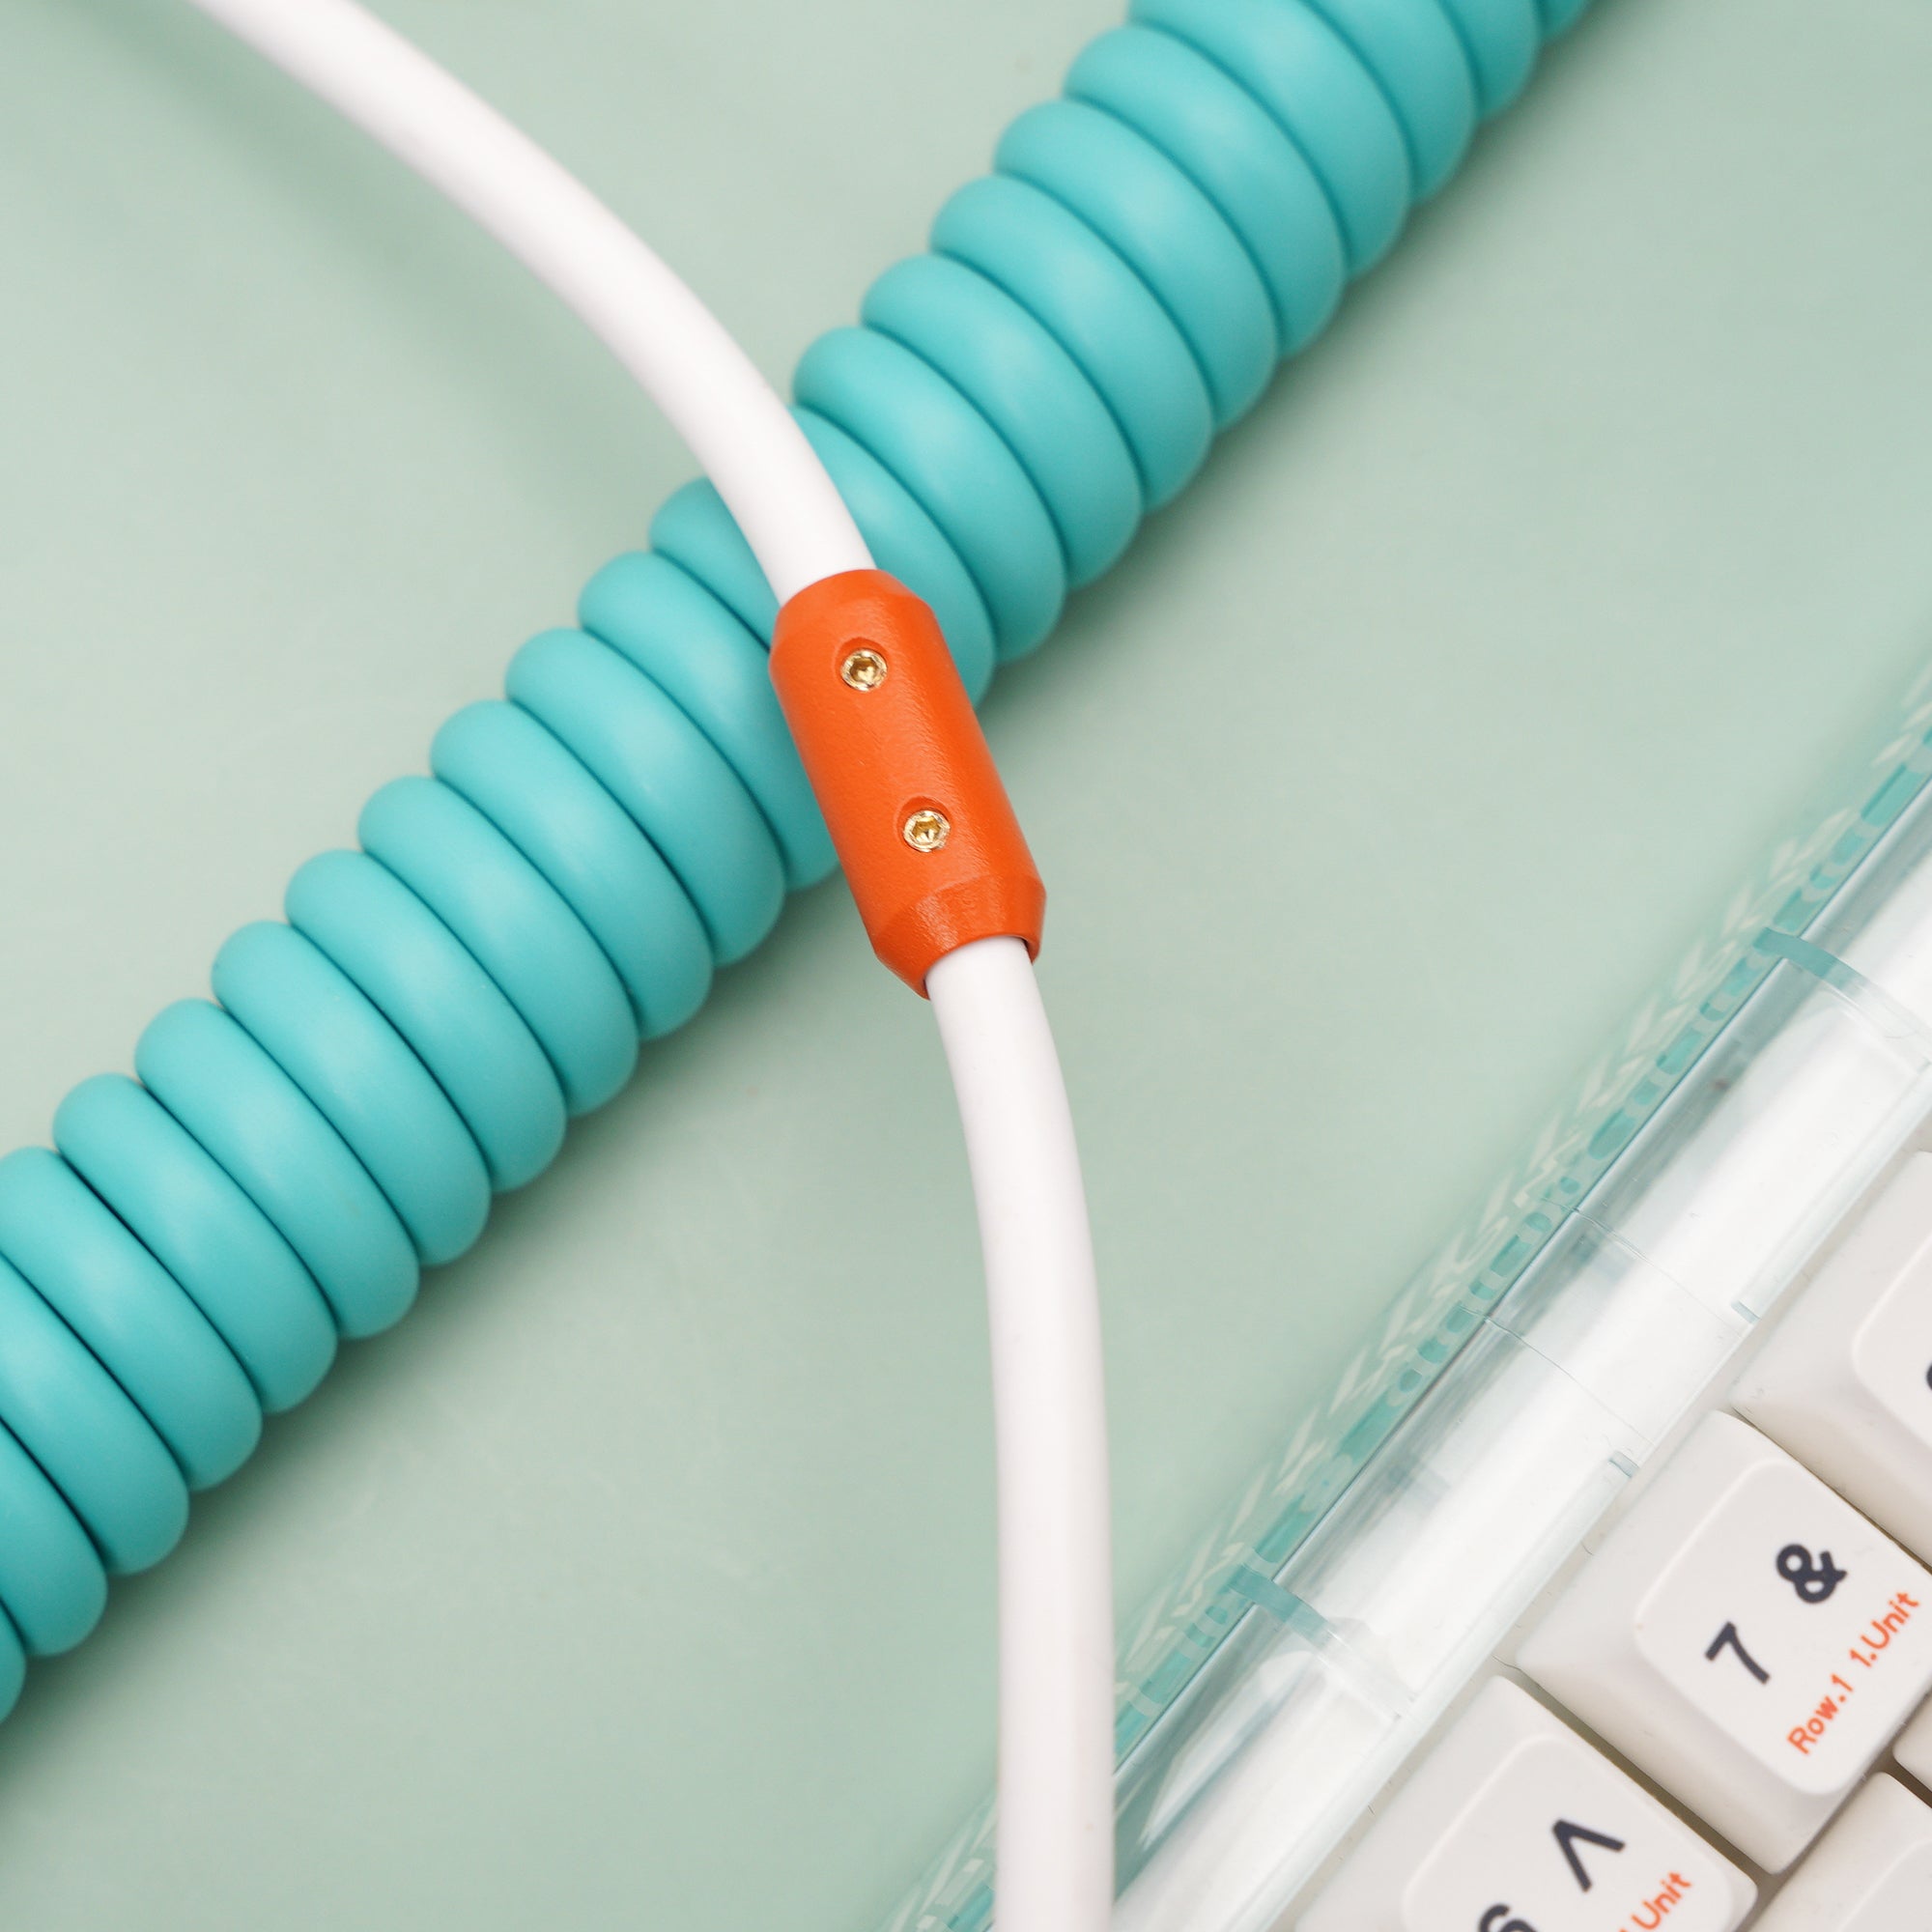 MelGeek カスタマイズ TPU ラバー コイル状 USB C ケーブル キーボード側にオレンジ色のアビエイター コイル付き